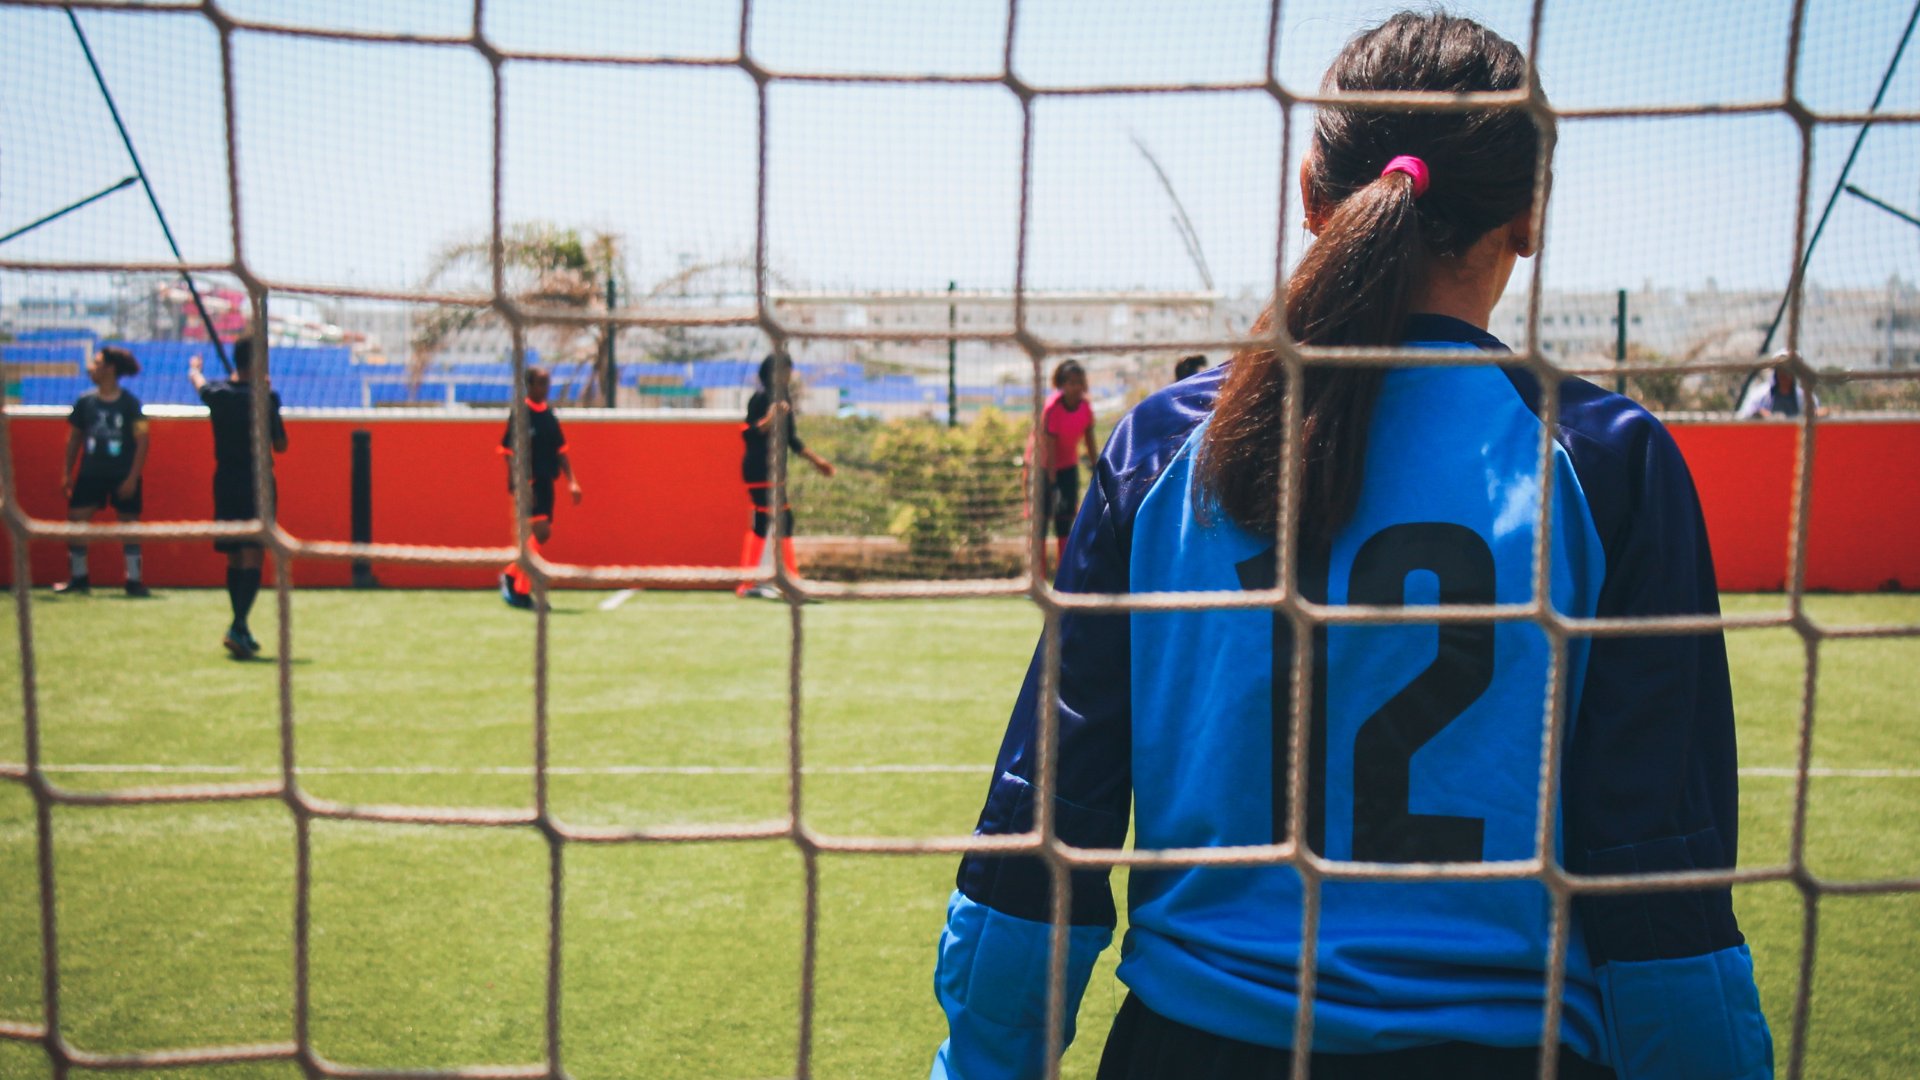 Uma mulher goleira, vista de costas. À frente dela, jogadores dispersos por um campo de futebol.